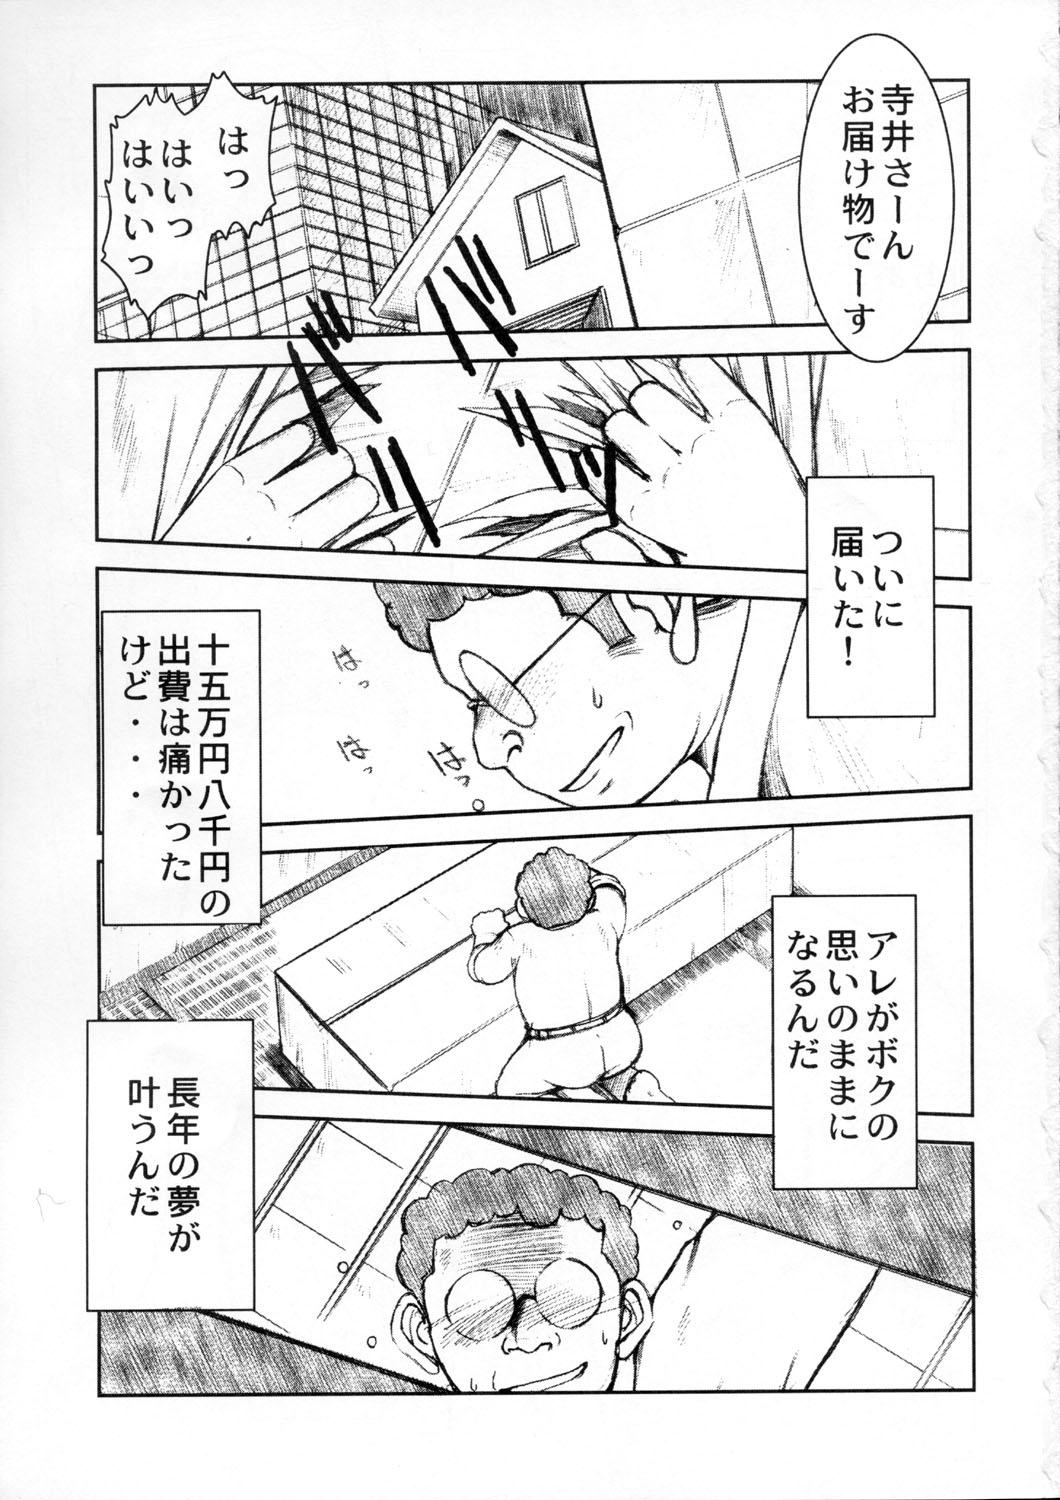 Public Akibon - Kochikame Kinky - Page 2